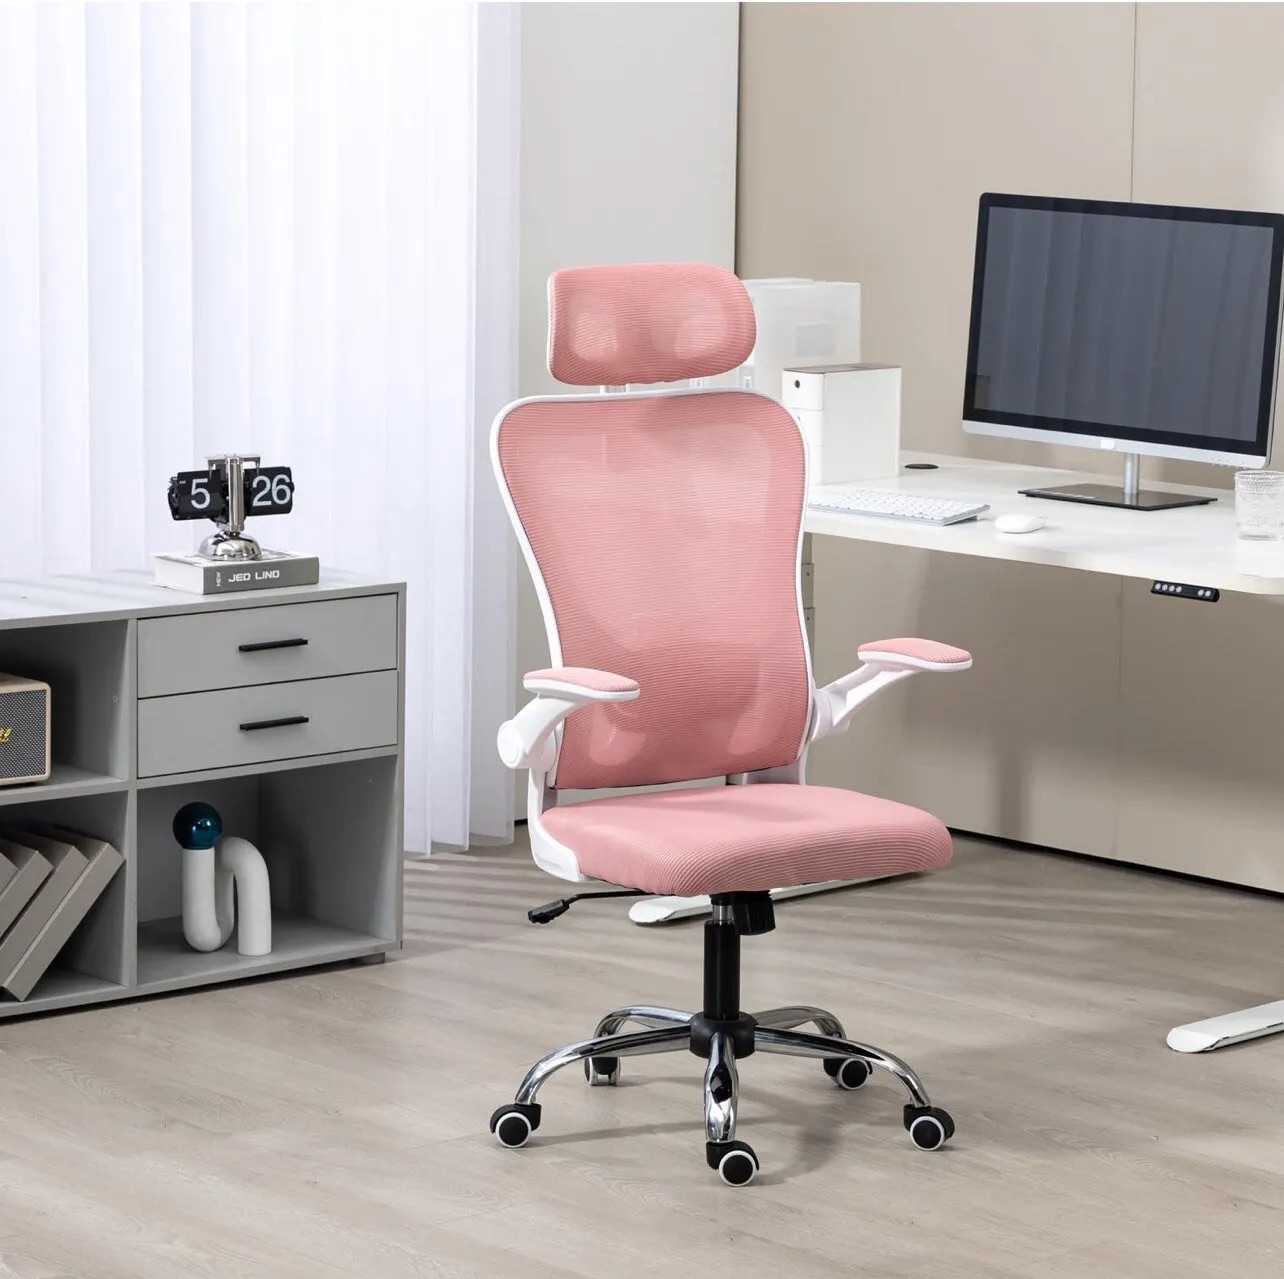 现在只需65，体验Panana Ergonomic Office Chair的舒适与功能！提升办公效率，呵护脊椎健康，尽在这把高背网椅！快来抢购吧！